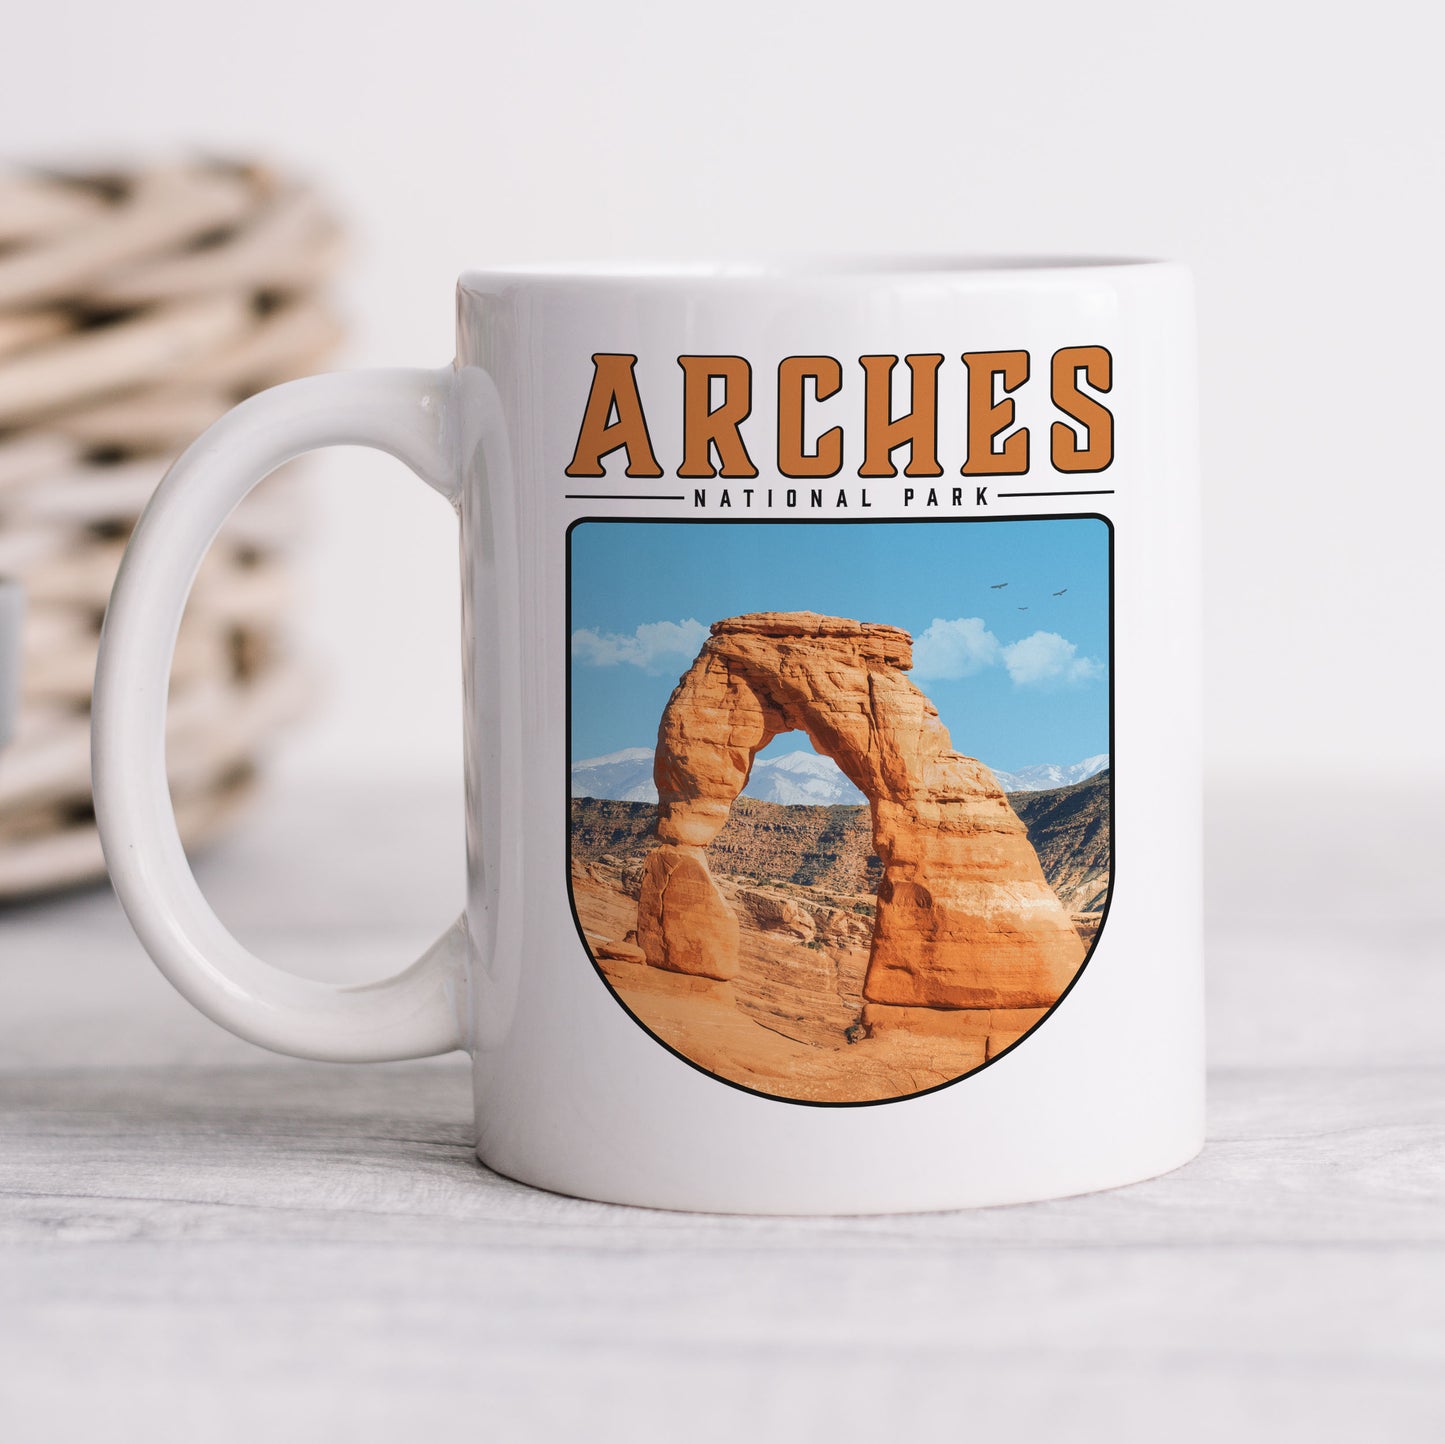 Arches National Park - Ceramic Mug